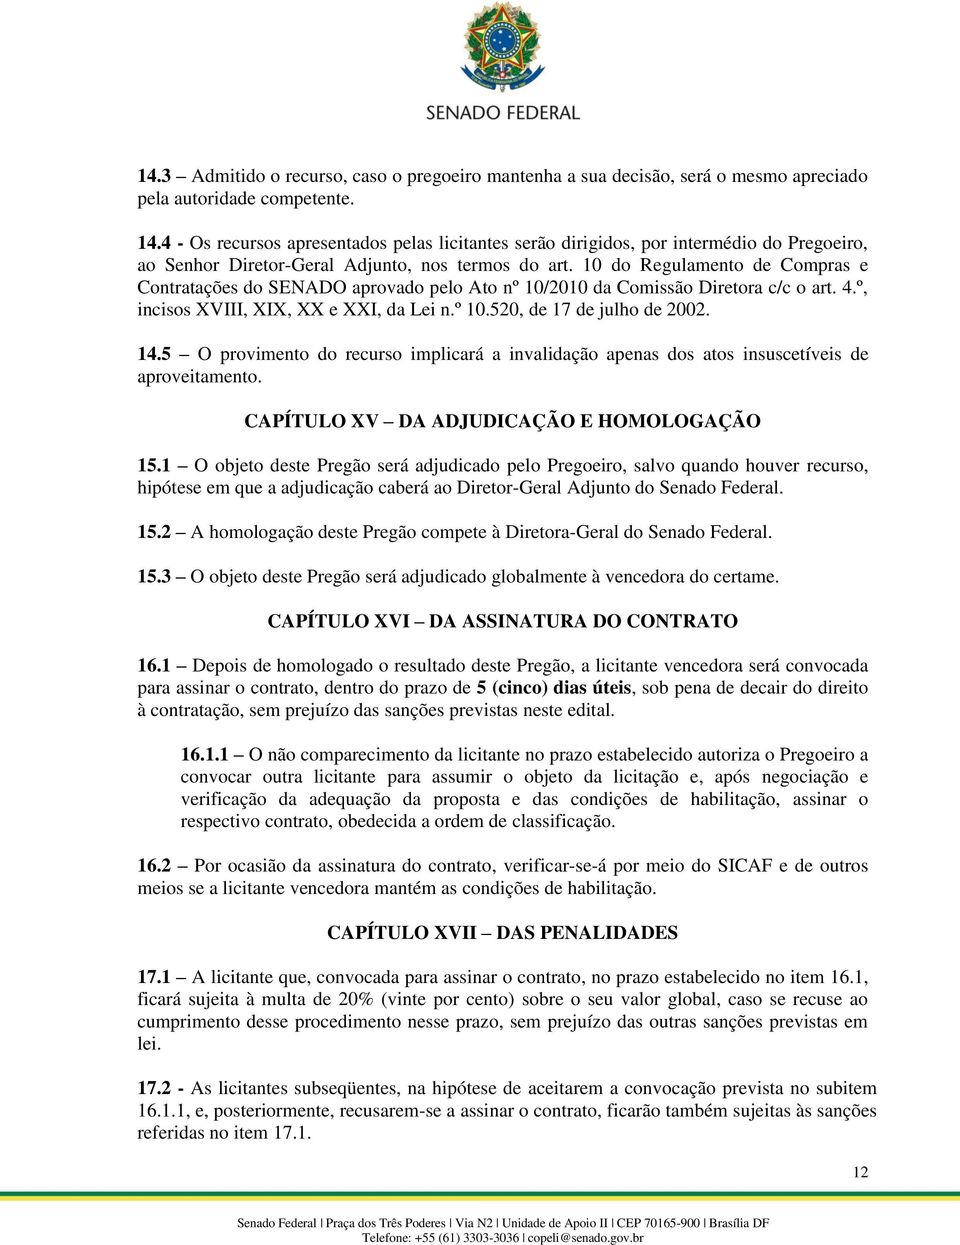 10 do Regulamento de Compras e Contratações do SENADO aprovado pelo Ato nº 10/2010 da Comissão Diretora c/c o art. 4.º, incisos XVIII, XIX, XX e XXI, da Lei n.º 10.520, de 17 de julho de 2002. 14.